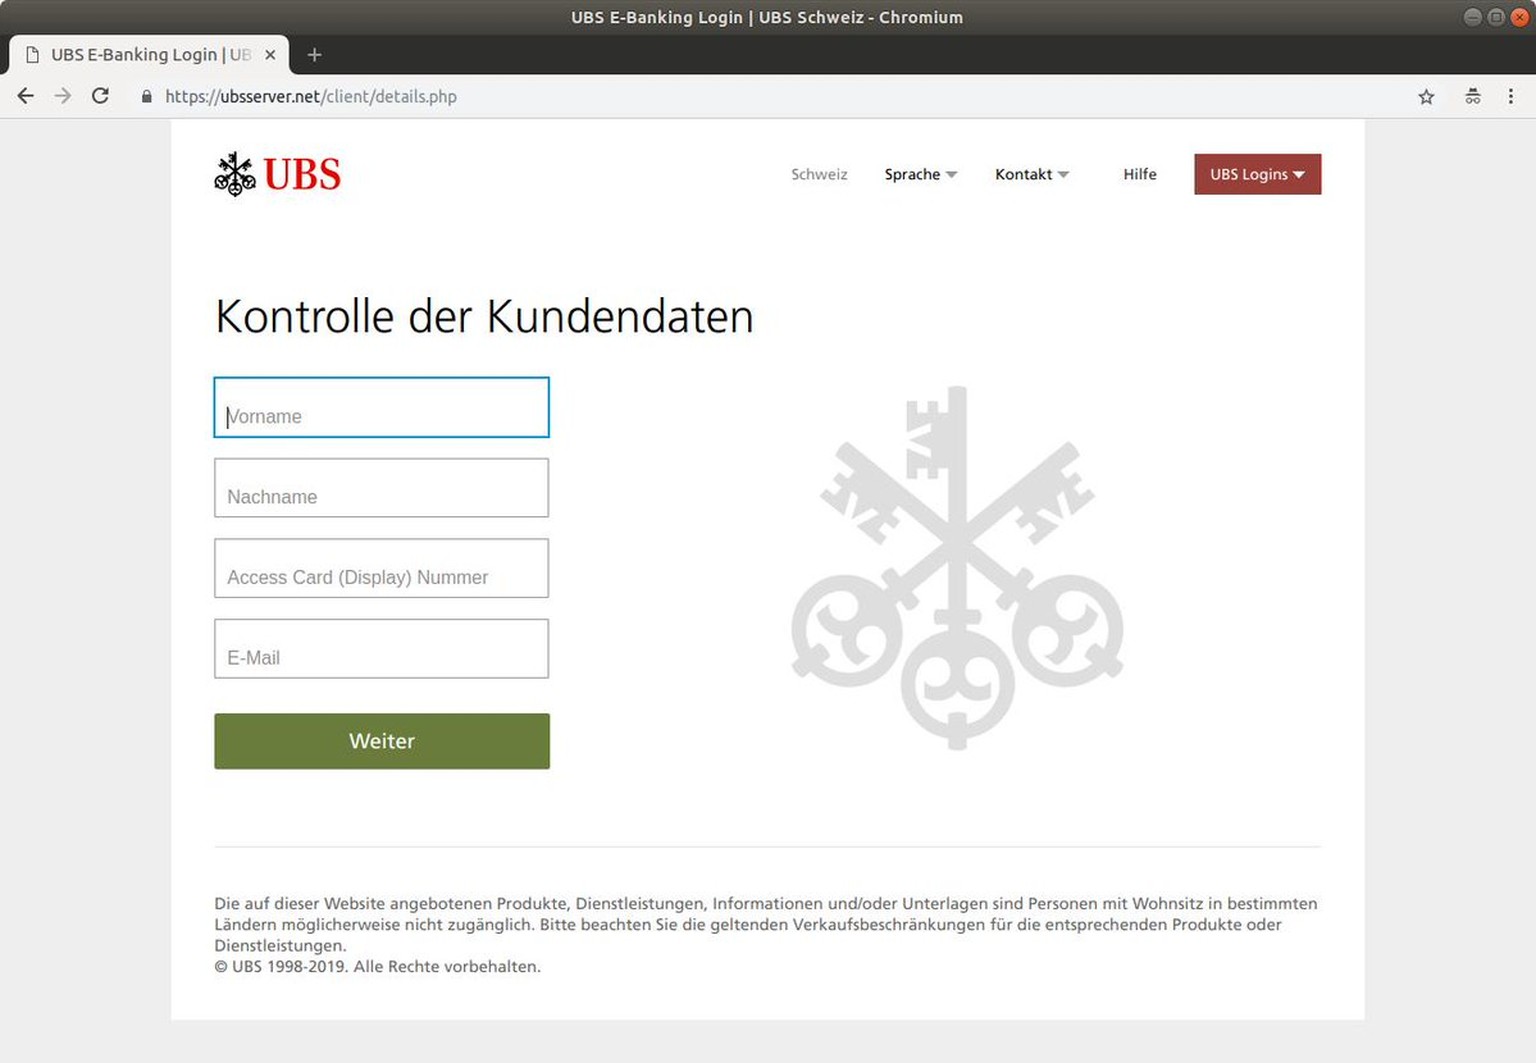 Wer auf dieser perfekt kopierten UBS-Webseite seine Daten eingibt, übergibt sie direkt den Betrügern.